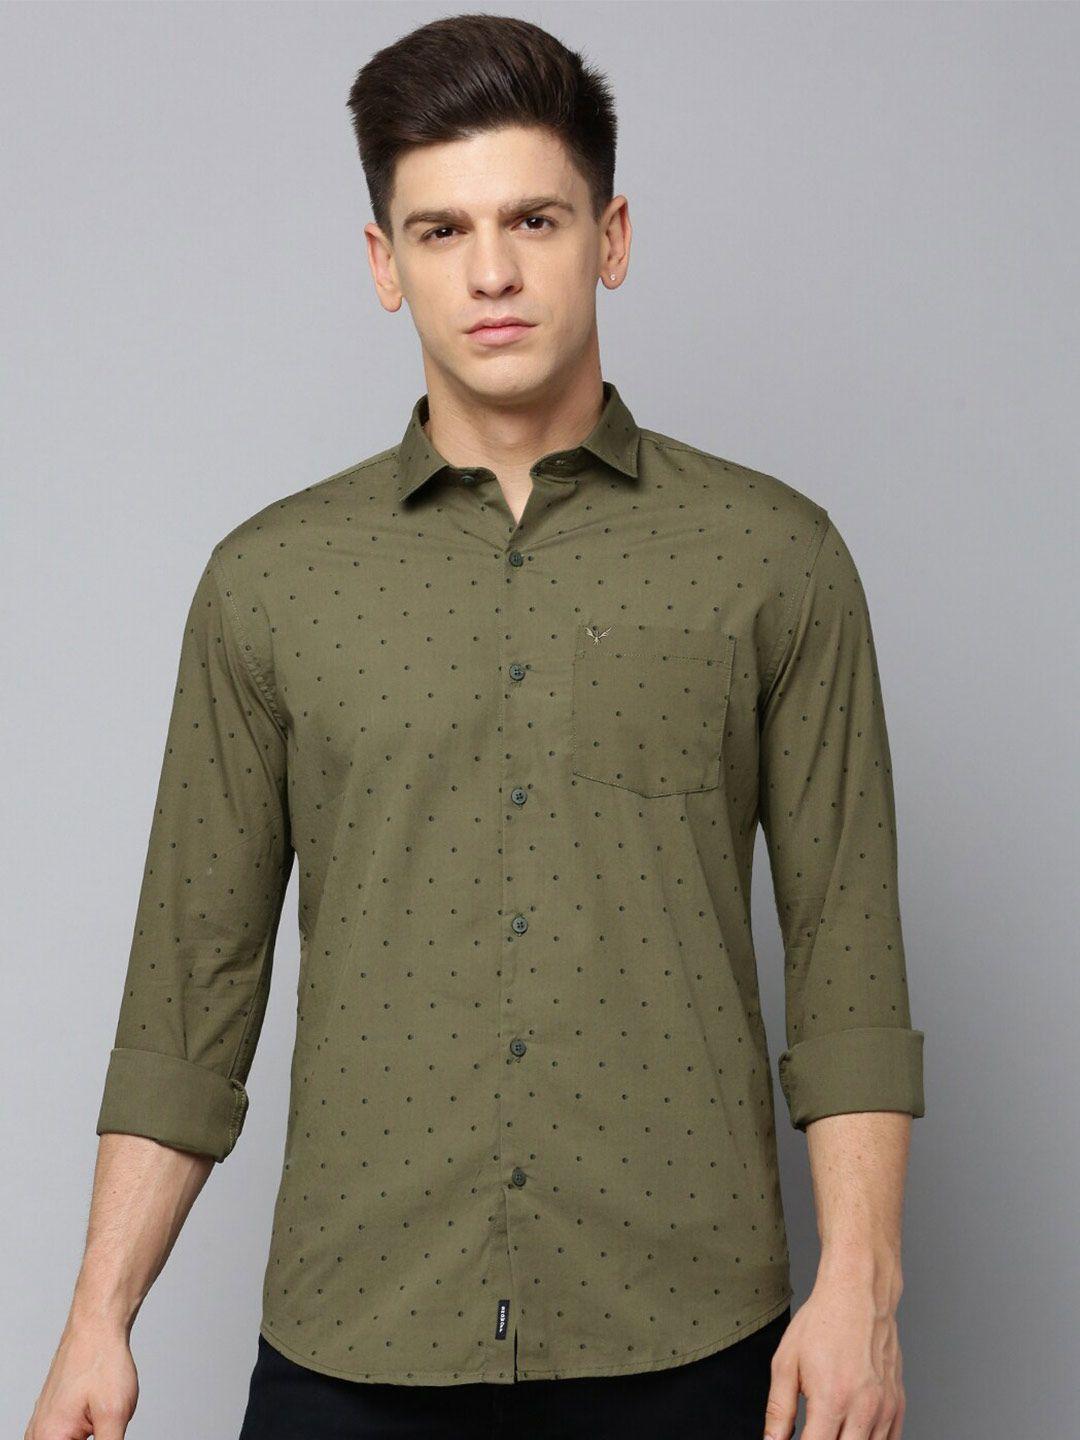 showoff comfort polka dot printed cotton casual shirt